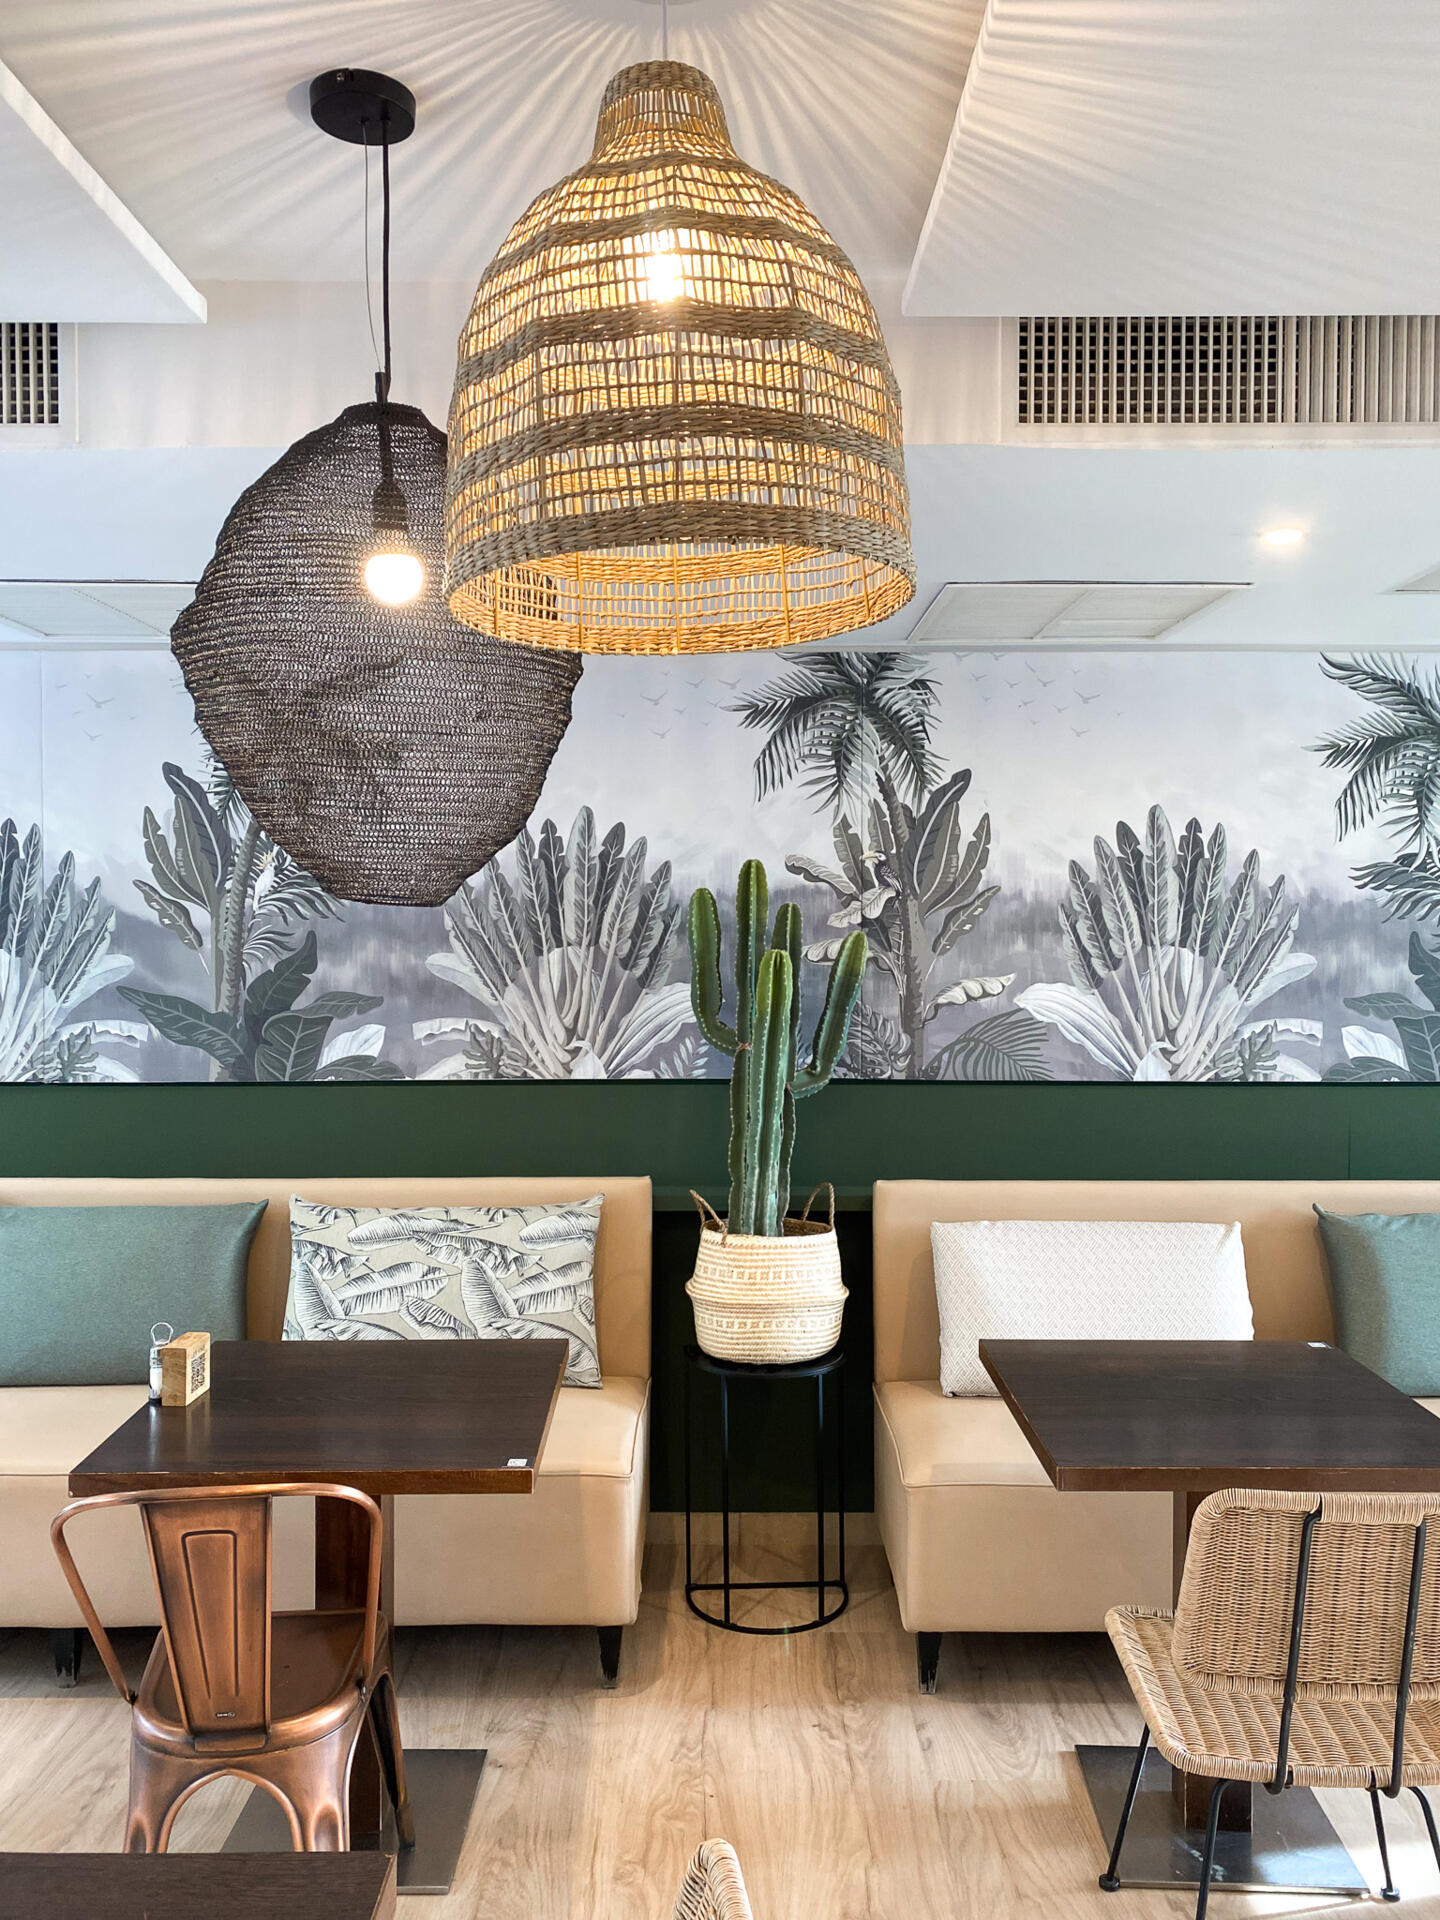 Innendekoration des Bistrot City Montpellier Ovalie mit einer Rattan-Hängeleuchte, einer Wand mit einem tropischen Kaktus-Wandbild in Grautönen und einem einladenden Sitzbereich mit Bänken und bedruckten Kissen.